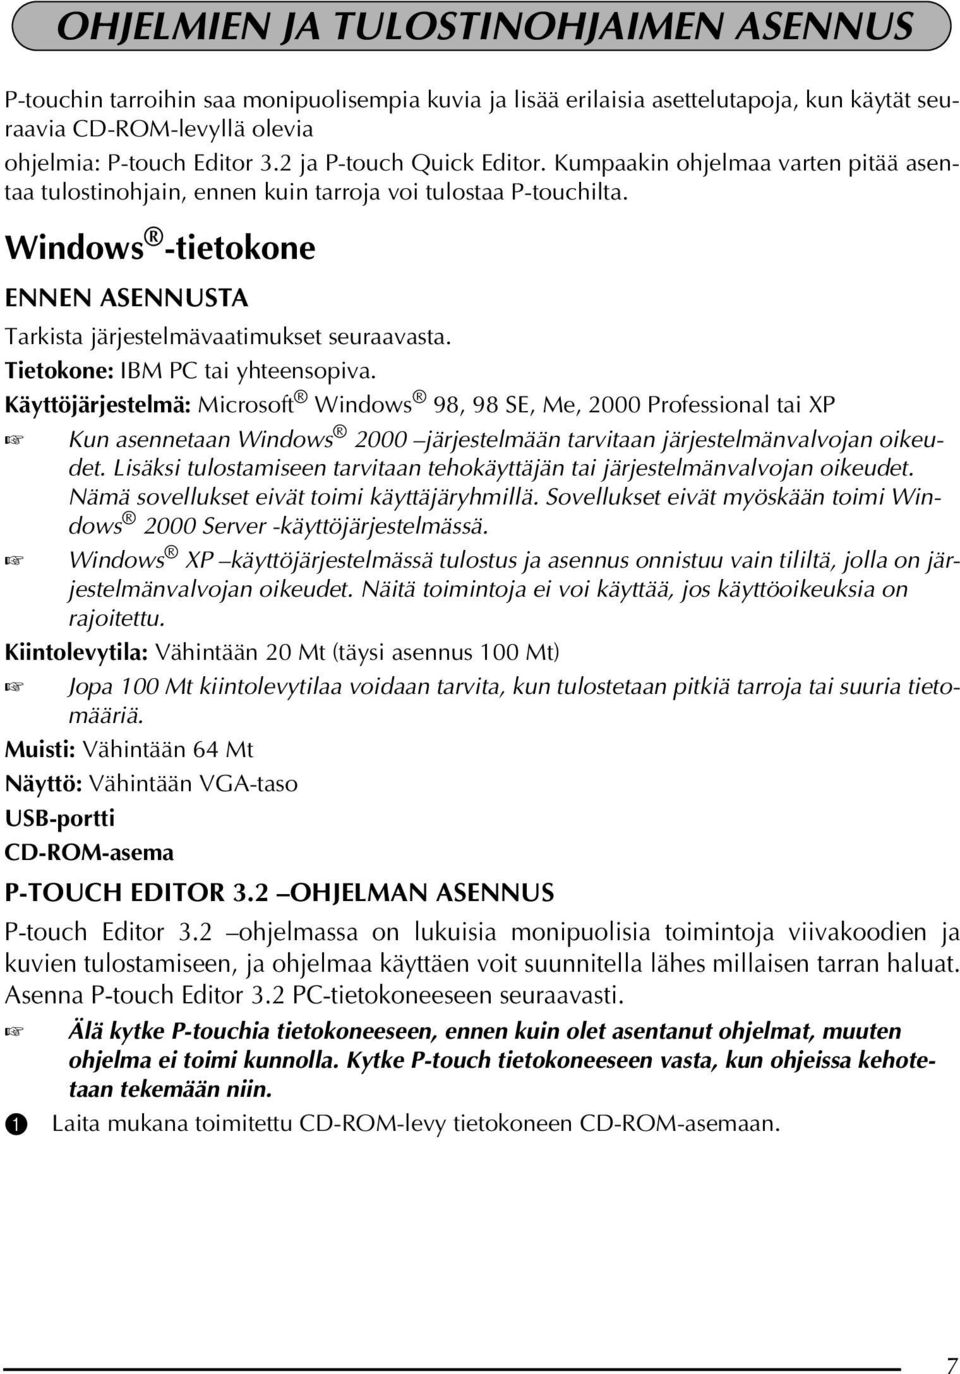 Windows -tietokone ENNEN ASENNUSTA Tarkista järjestelmävaatimukset seuraavasta. Tietokone: IBM PC tai yhteensopiva.